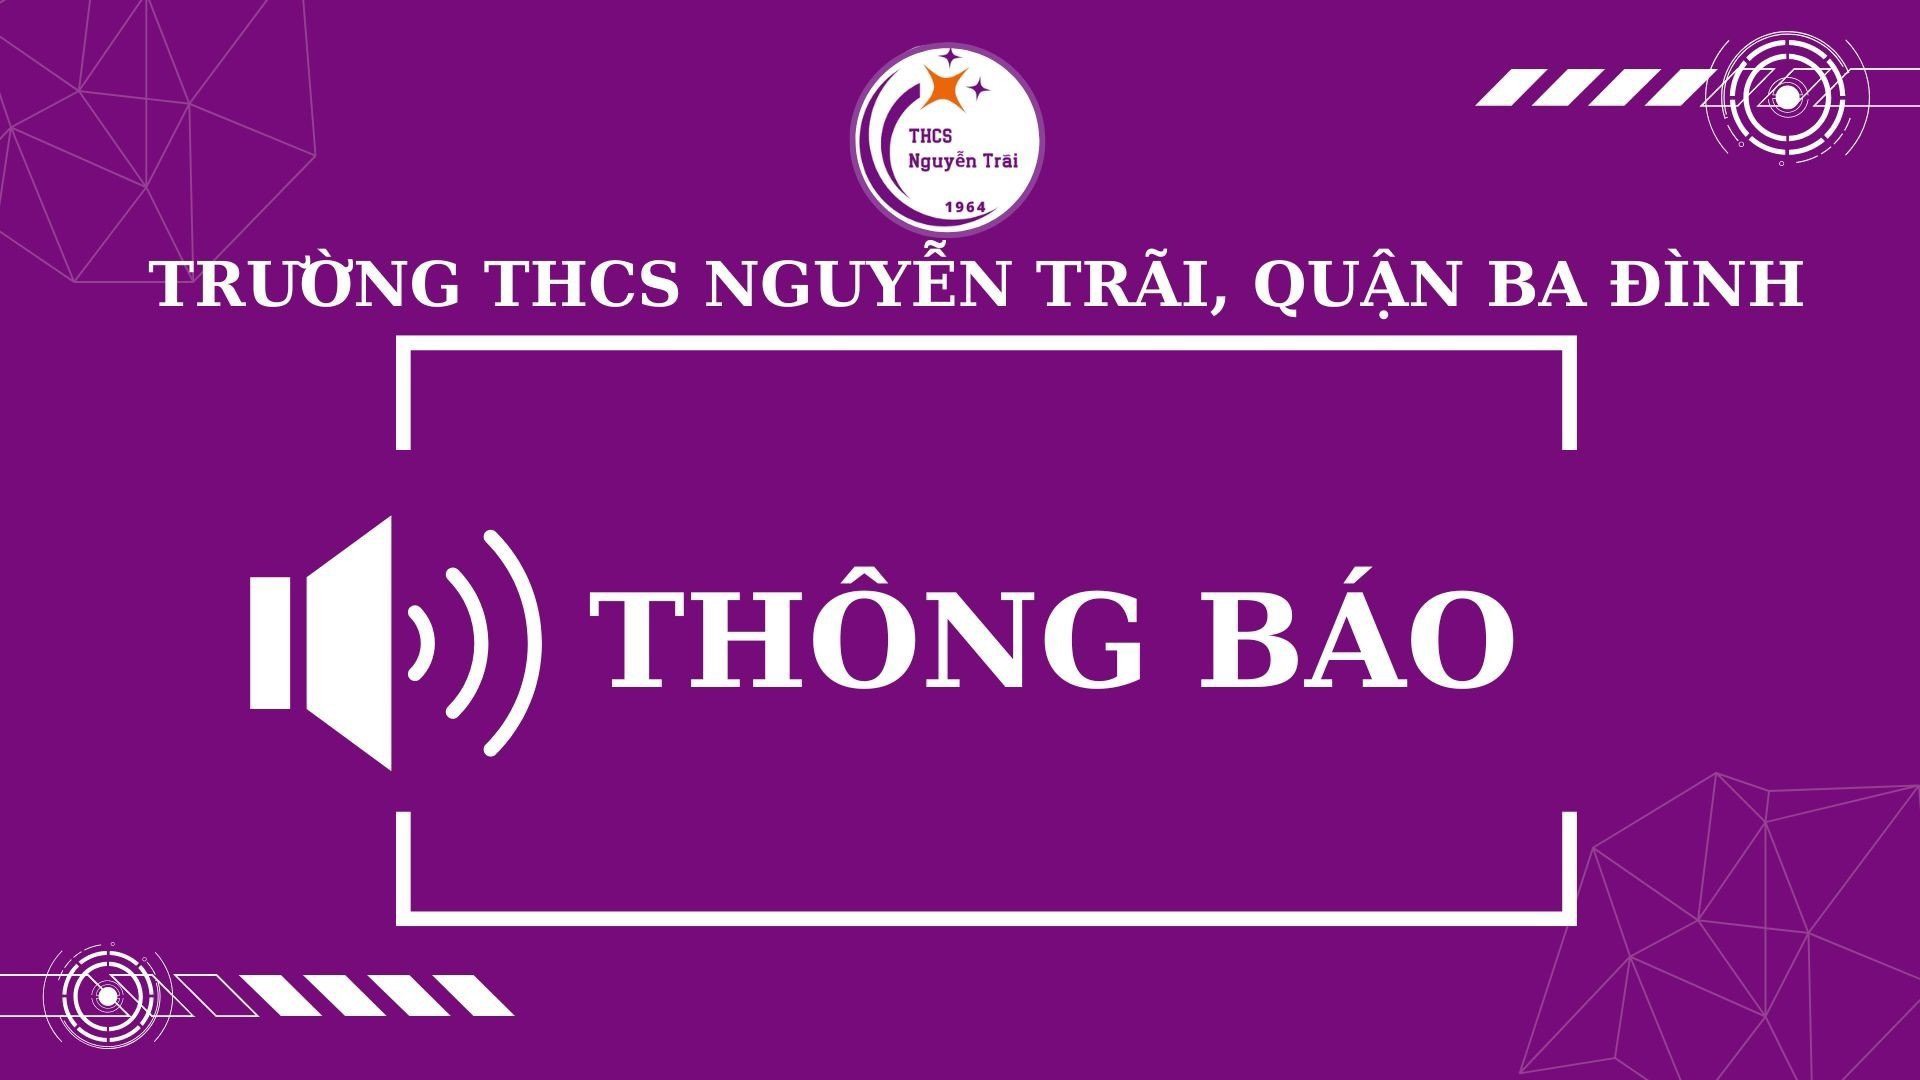 Theo Quyết định số 1262/QĐ-UBND đồng chí Phạm Thị Hương Giang về công tác và bổ nhiệm giữ chức vụ Hiểu trưởng trường THCS Giảng Võ 2